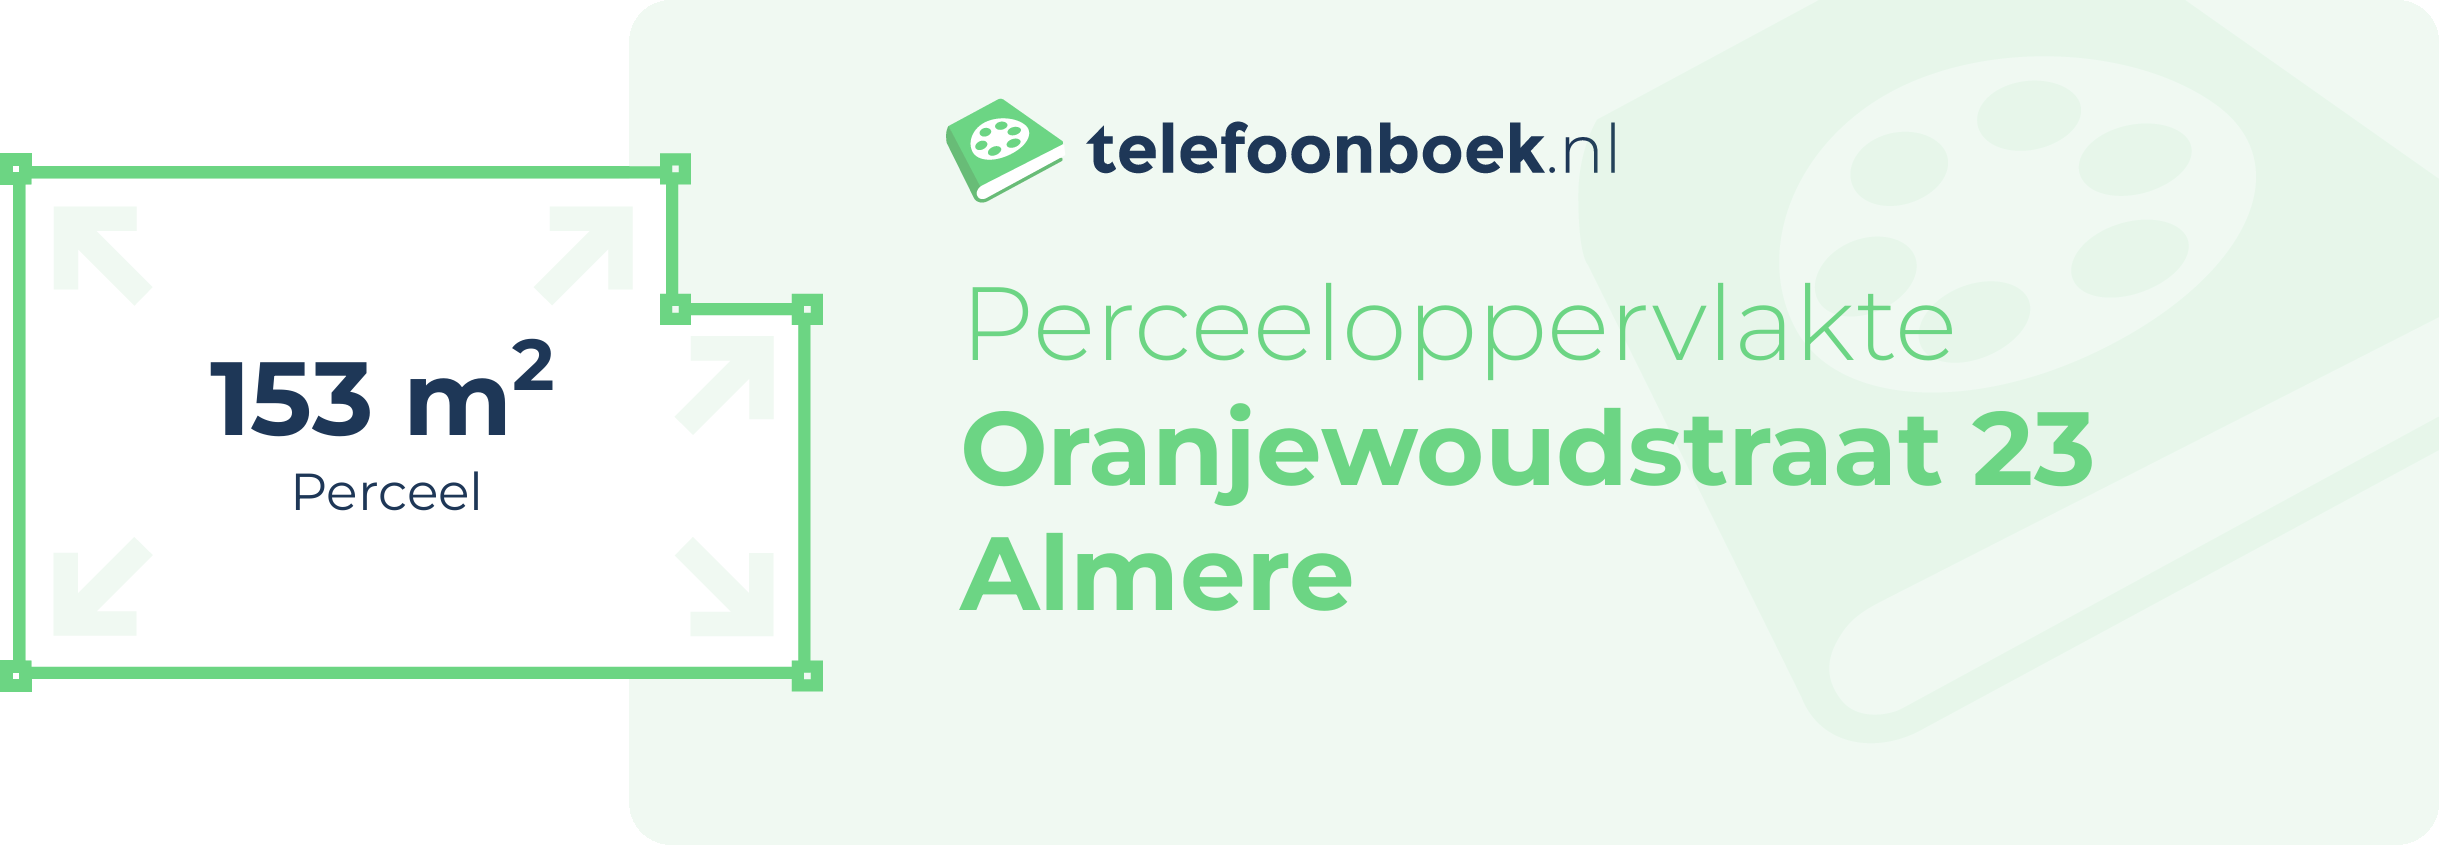 Perceeloppervlakte Oranjewoudstraat 23 Almere